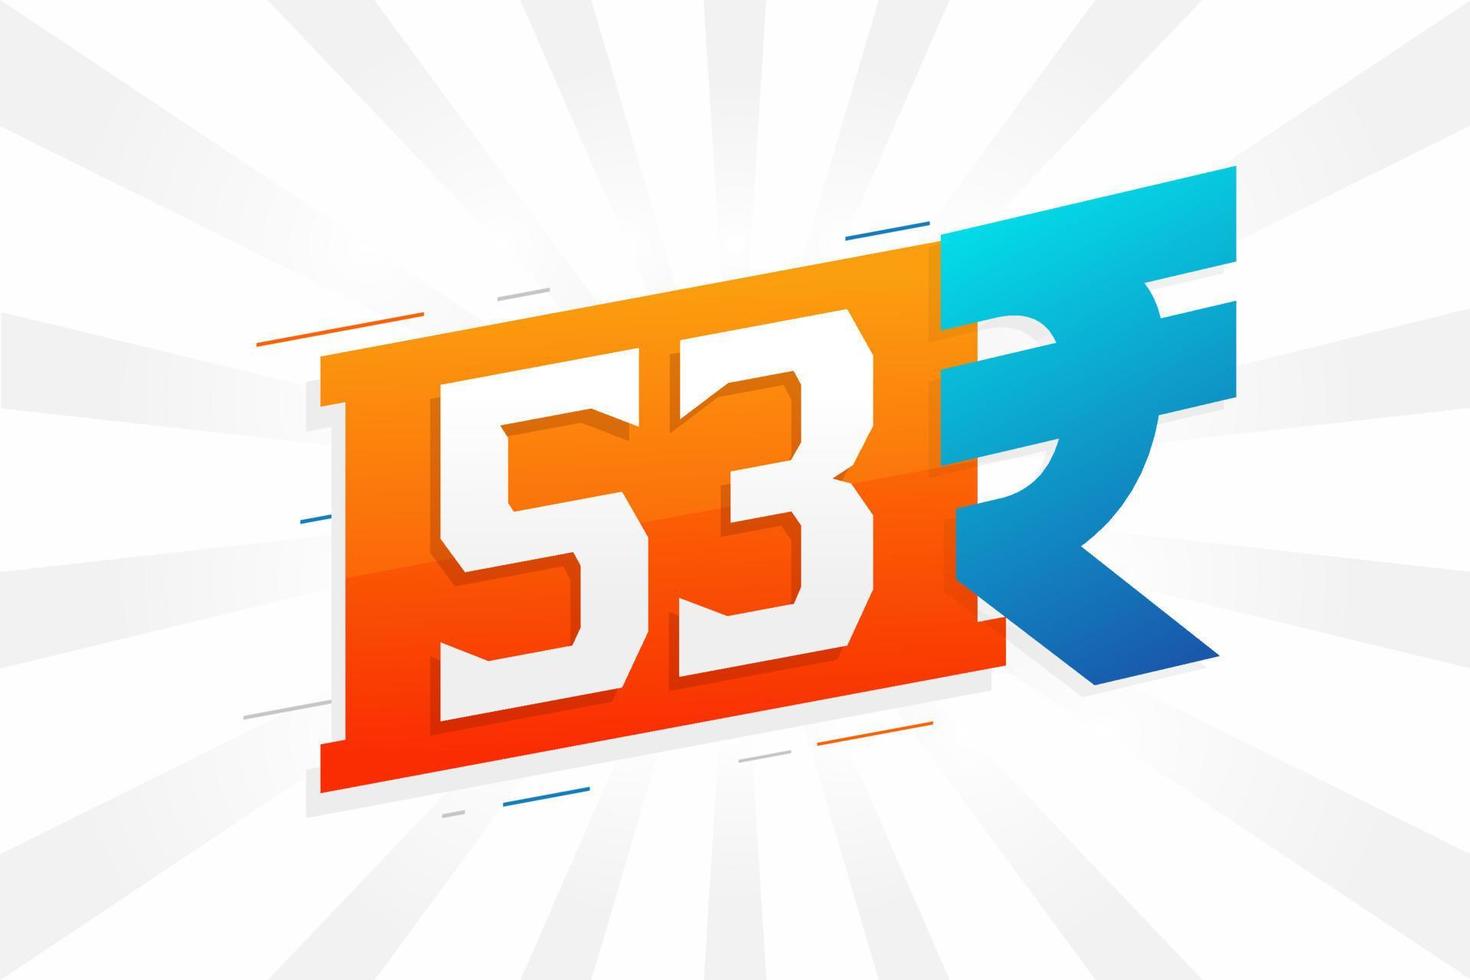 Image vectorielle de texte en gras symbole 53 roupies. 53 roupie indienne monnaie signe illustration vectorielle vecteur